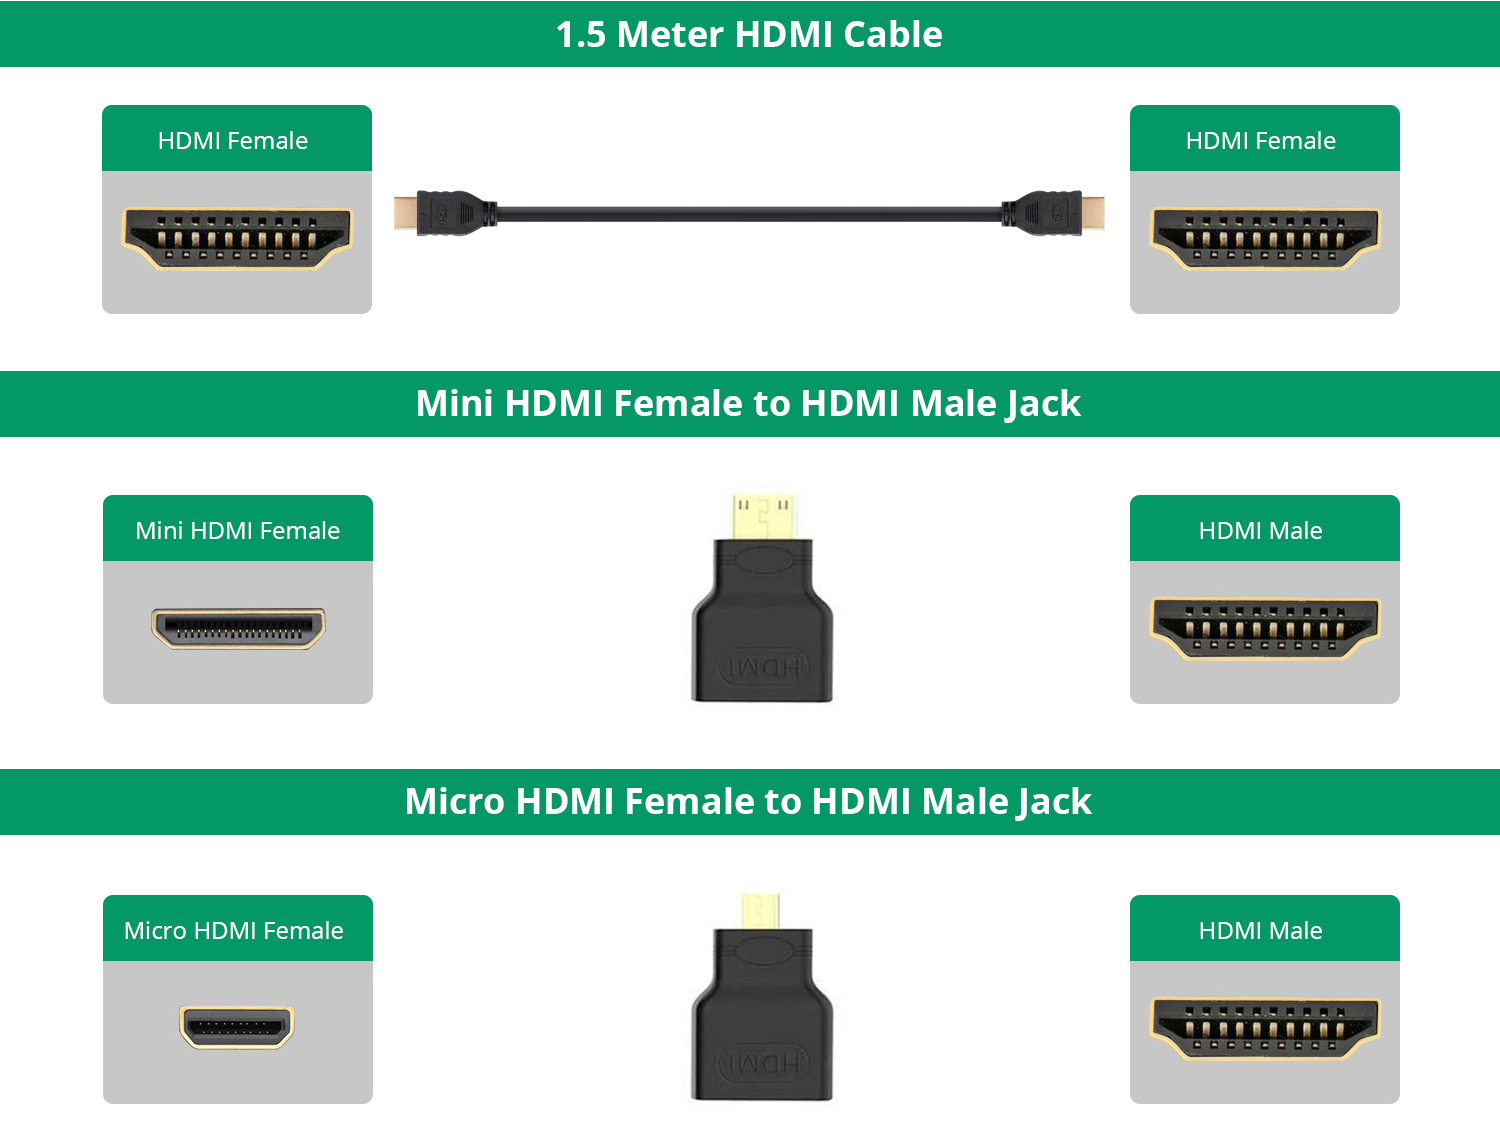 Mini and Micro HDMI